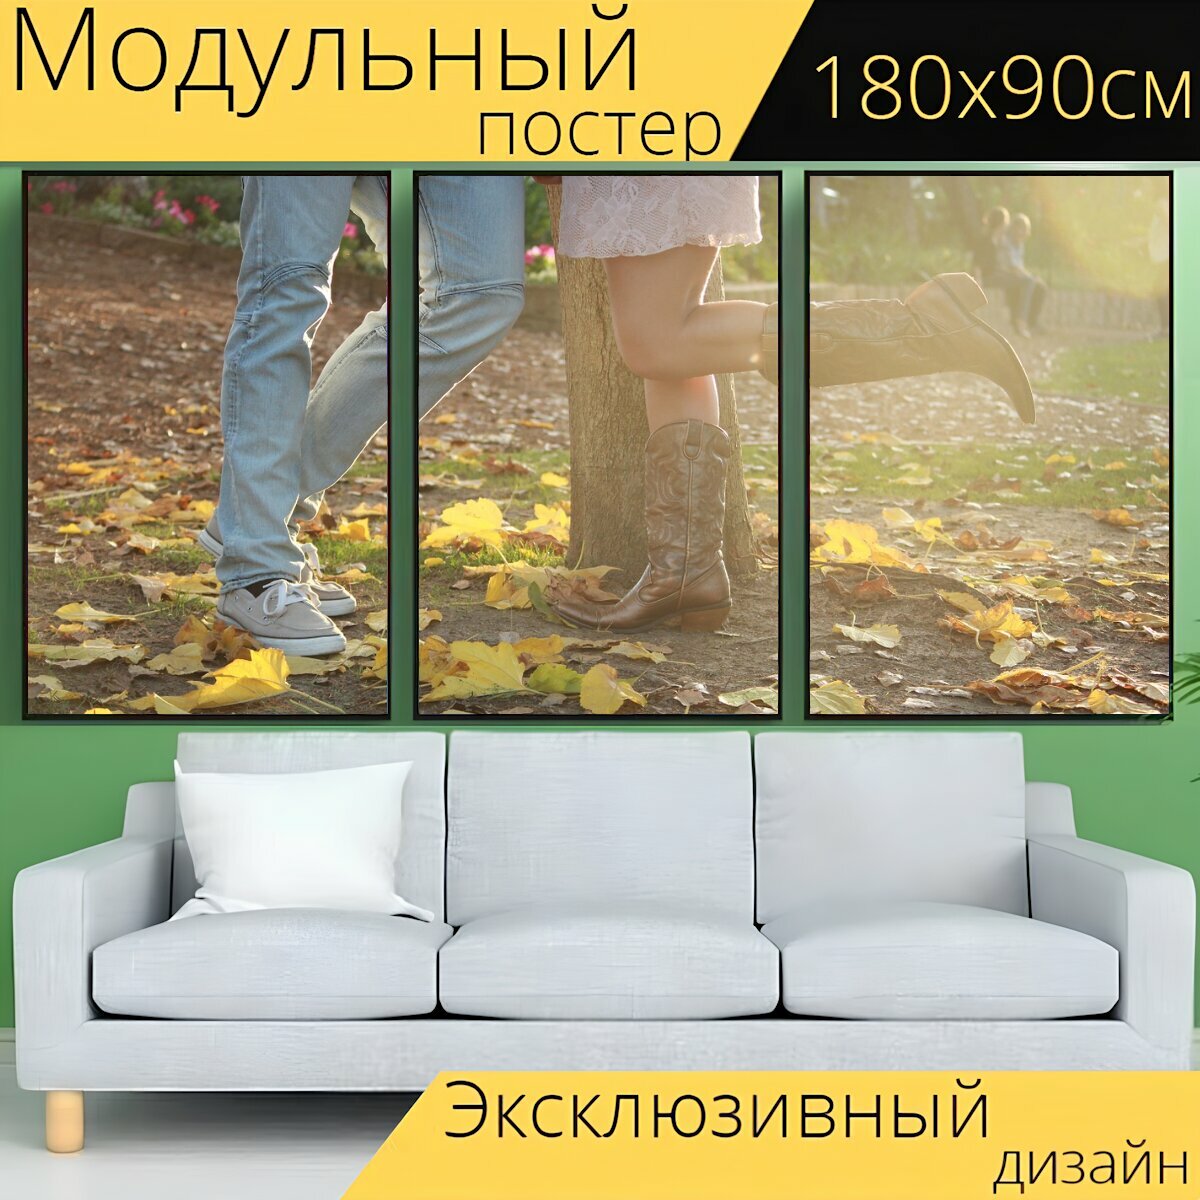 Модульный постер "Помолвка, осень, ковбойские сапоги" 180 x 90 см. для интерьера